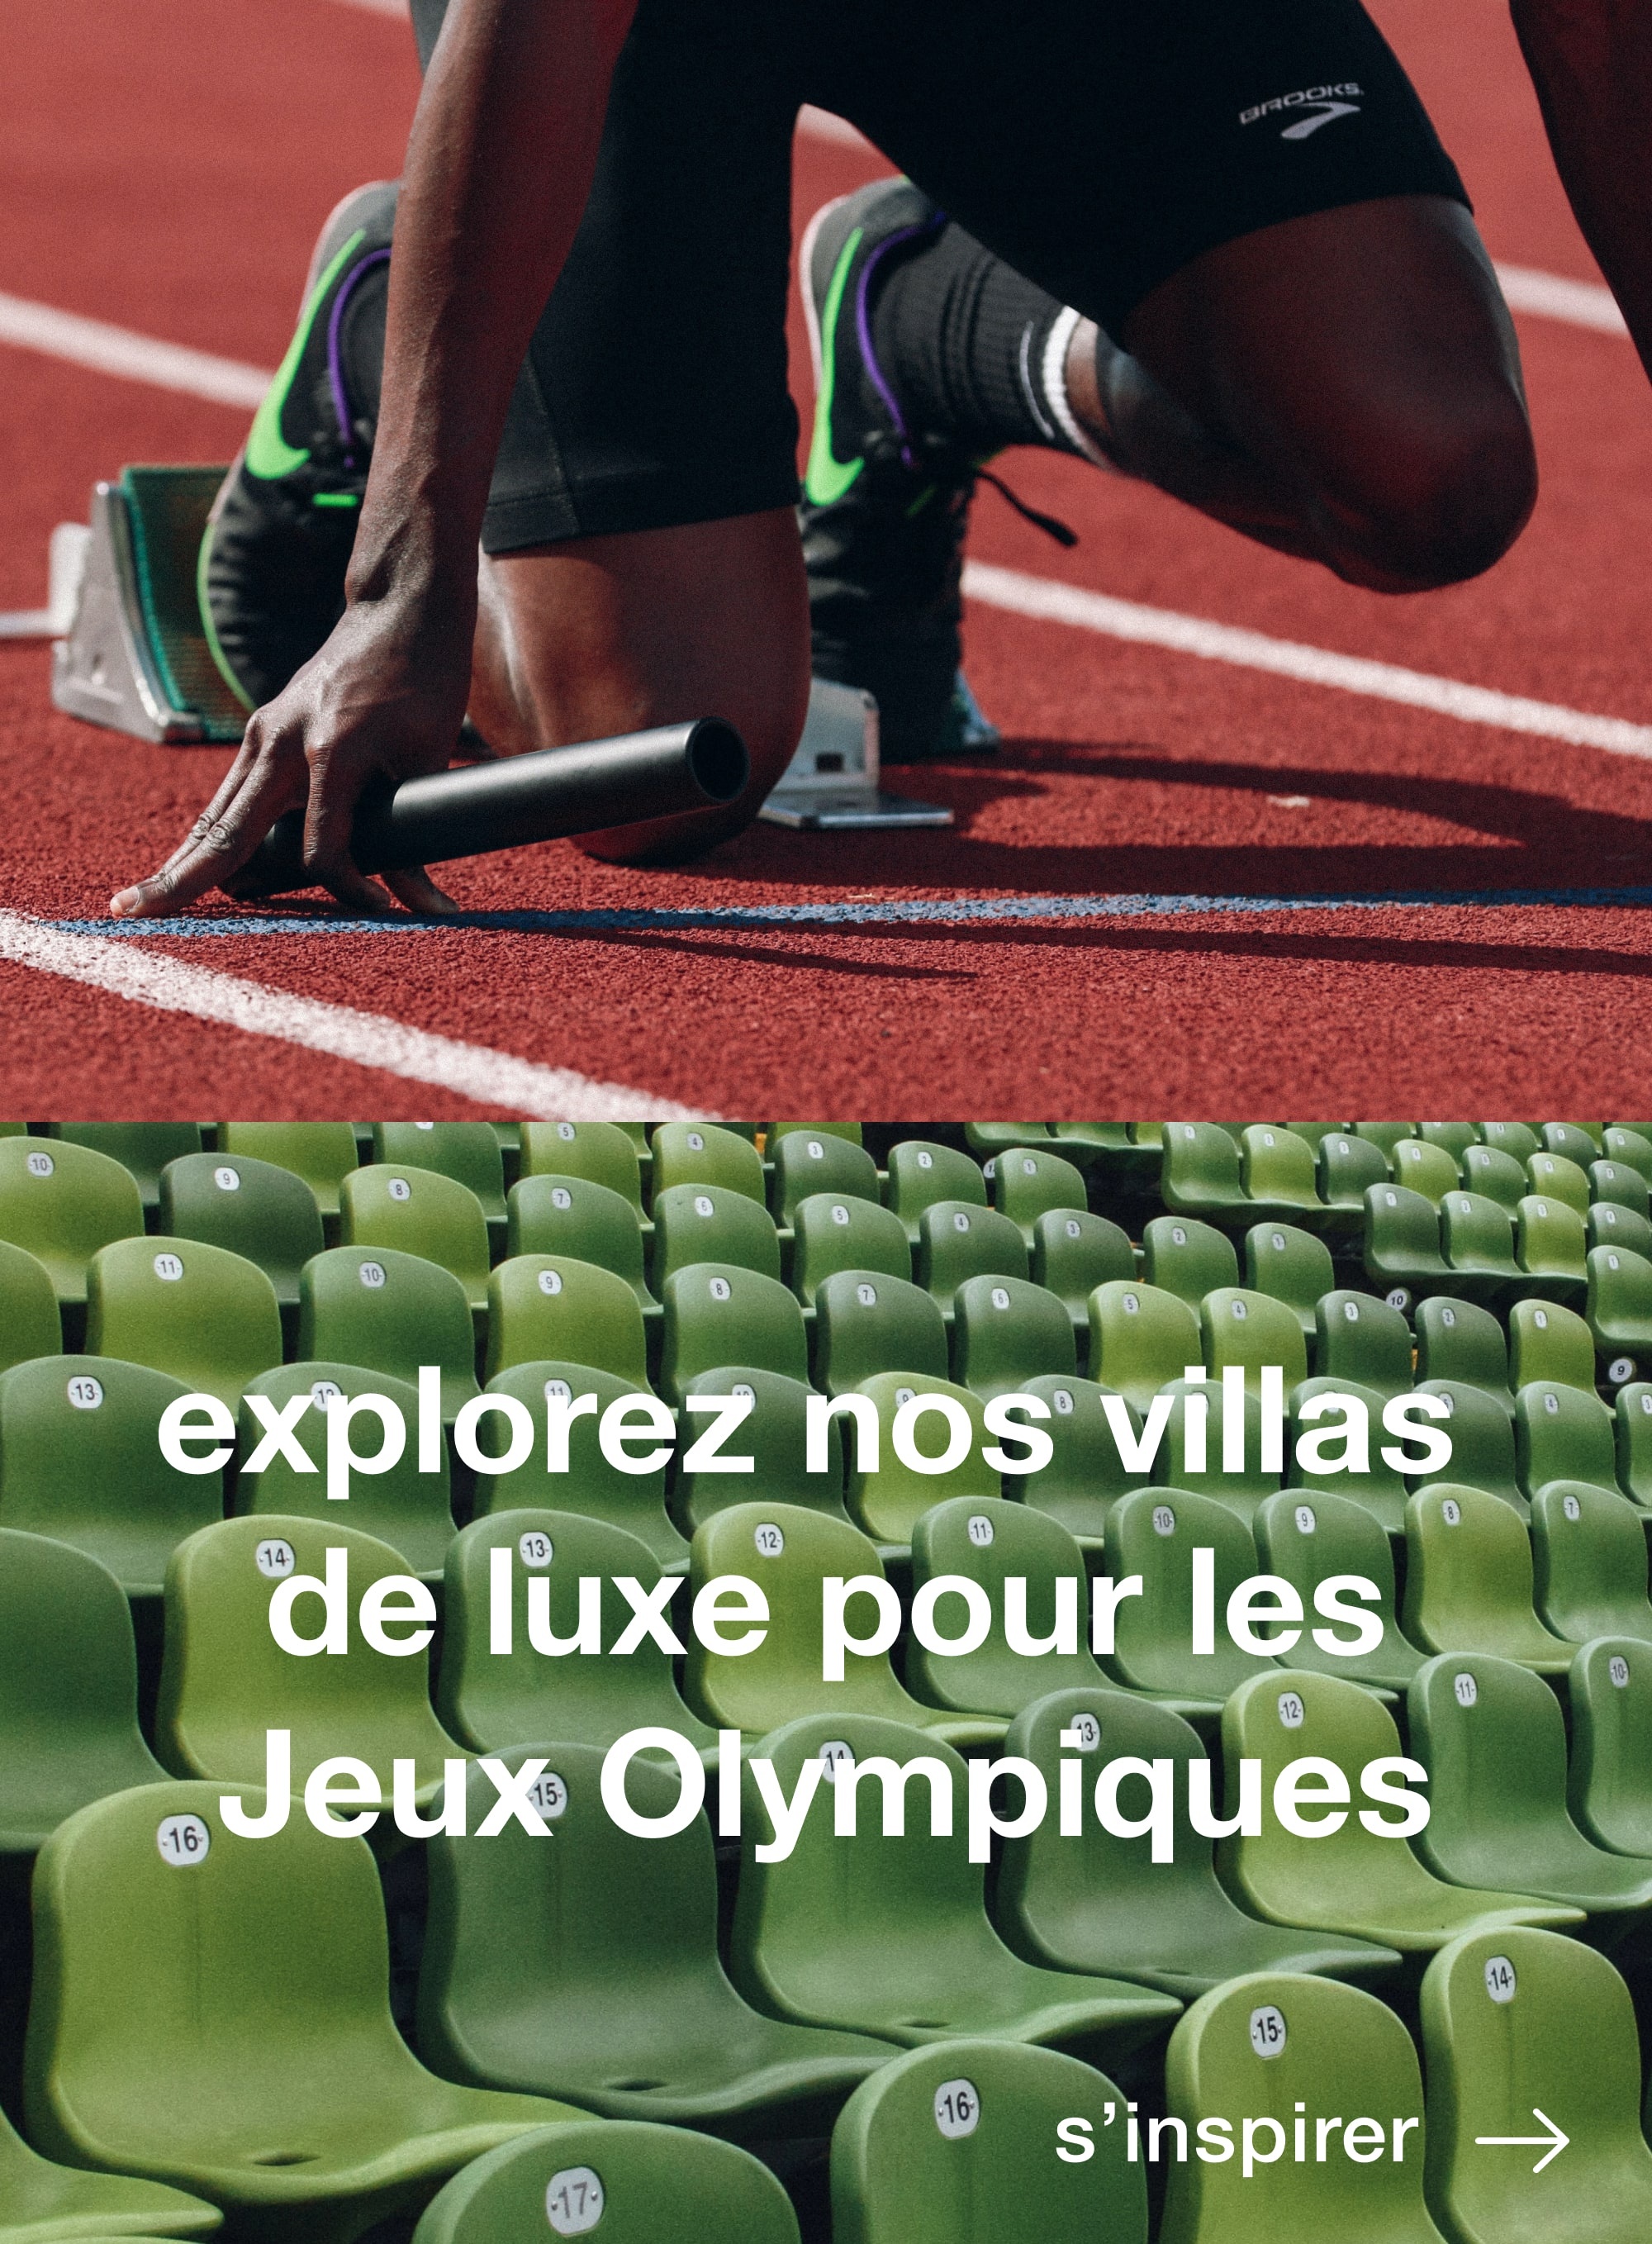 Paris 2024 : 3 nouveaux athlètes sélectionnés pour les Jeux Olympiques